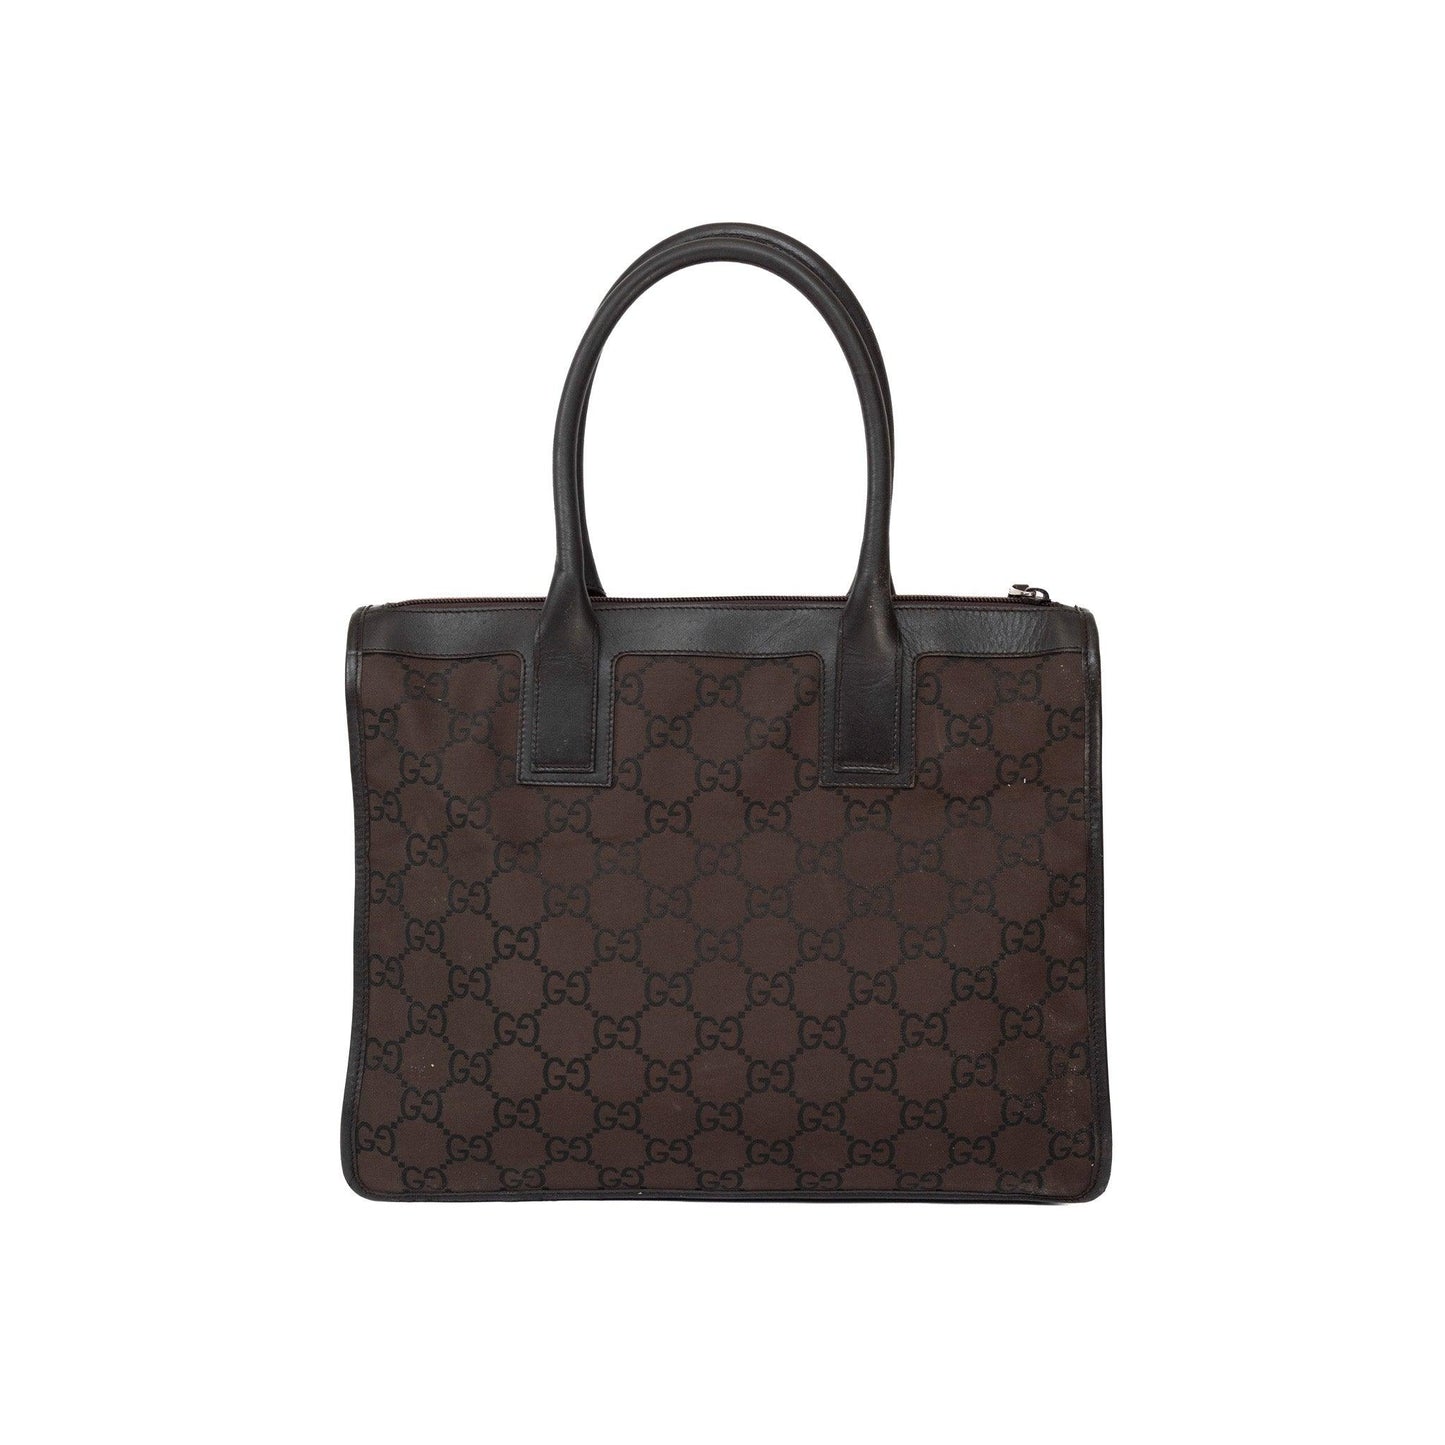 Gucci Brown Monogram Tote Bag